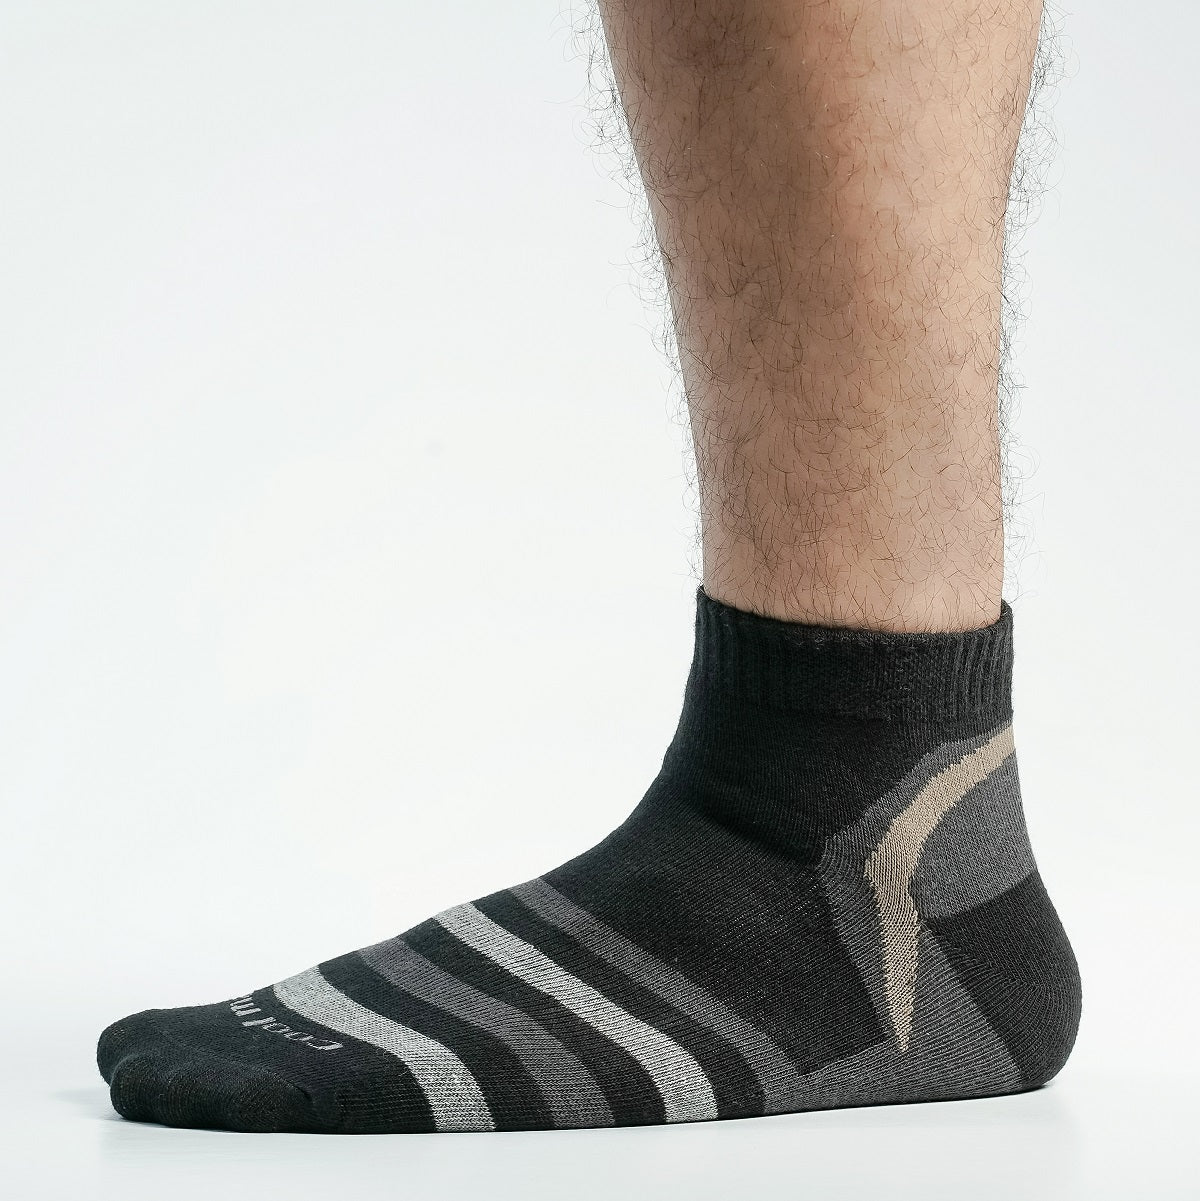 Pride Zone Ankle Socks for Men by MB Hosiery